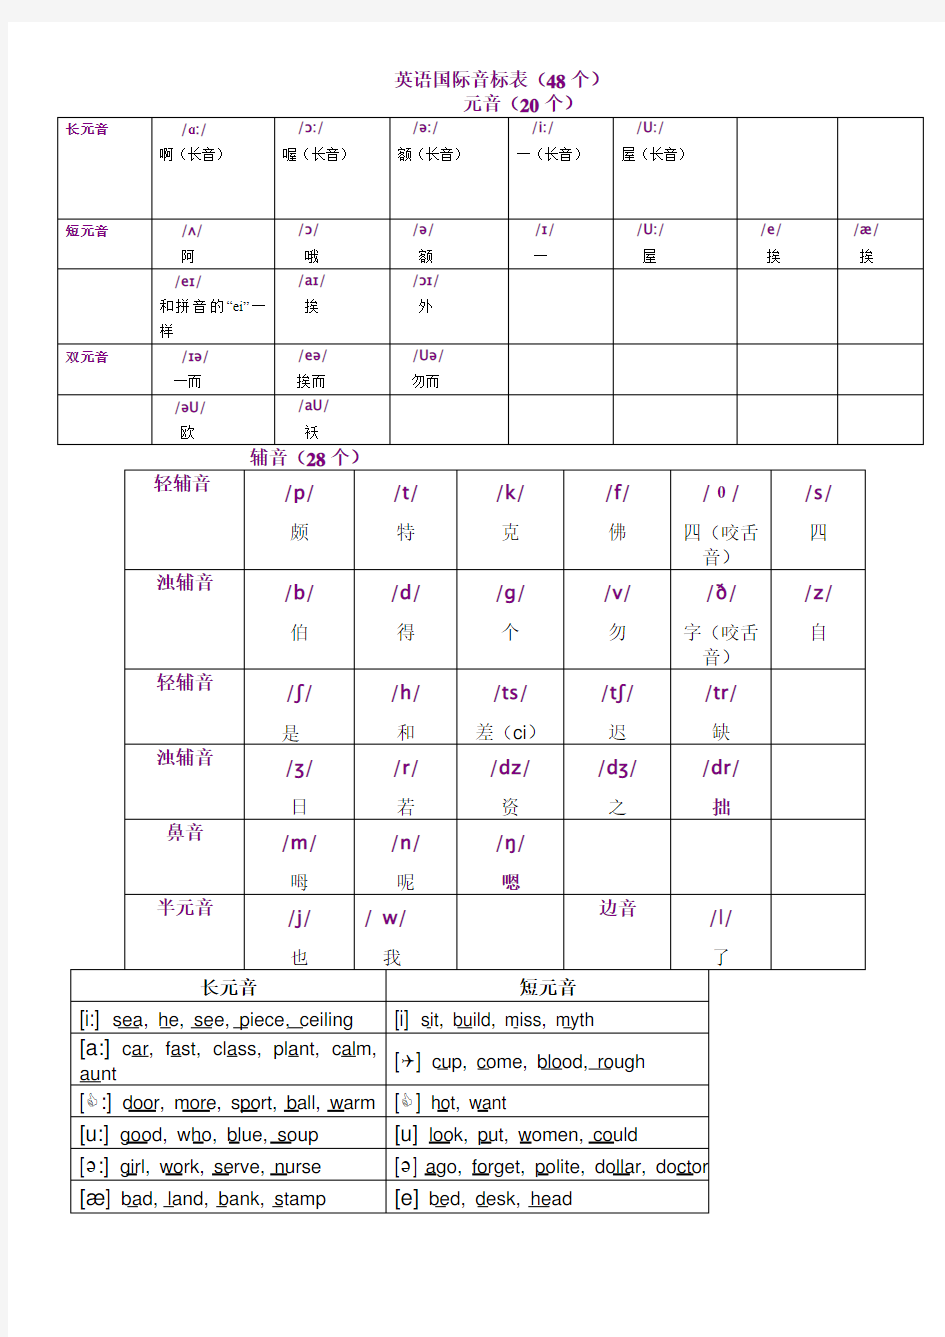 英语国际音标表(48个)打印版